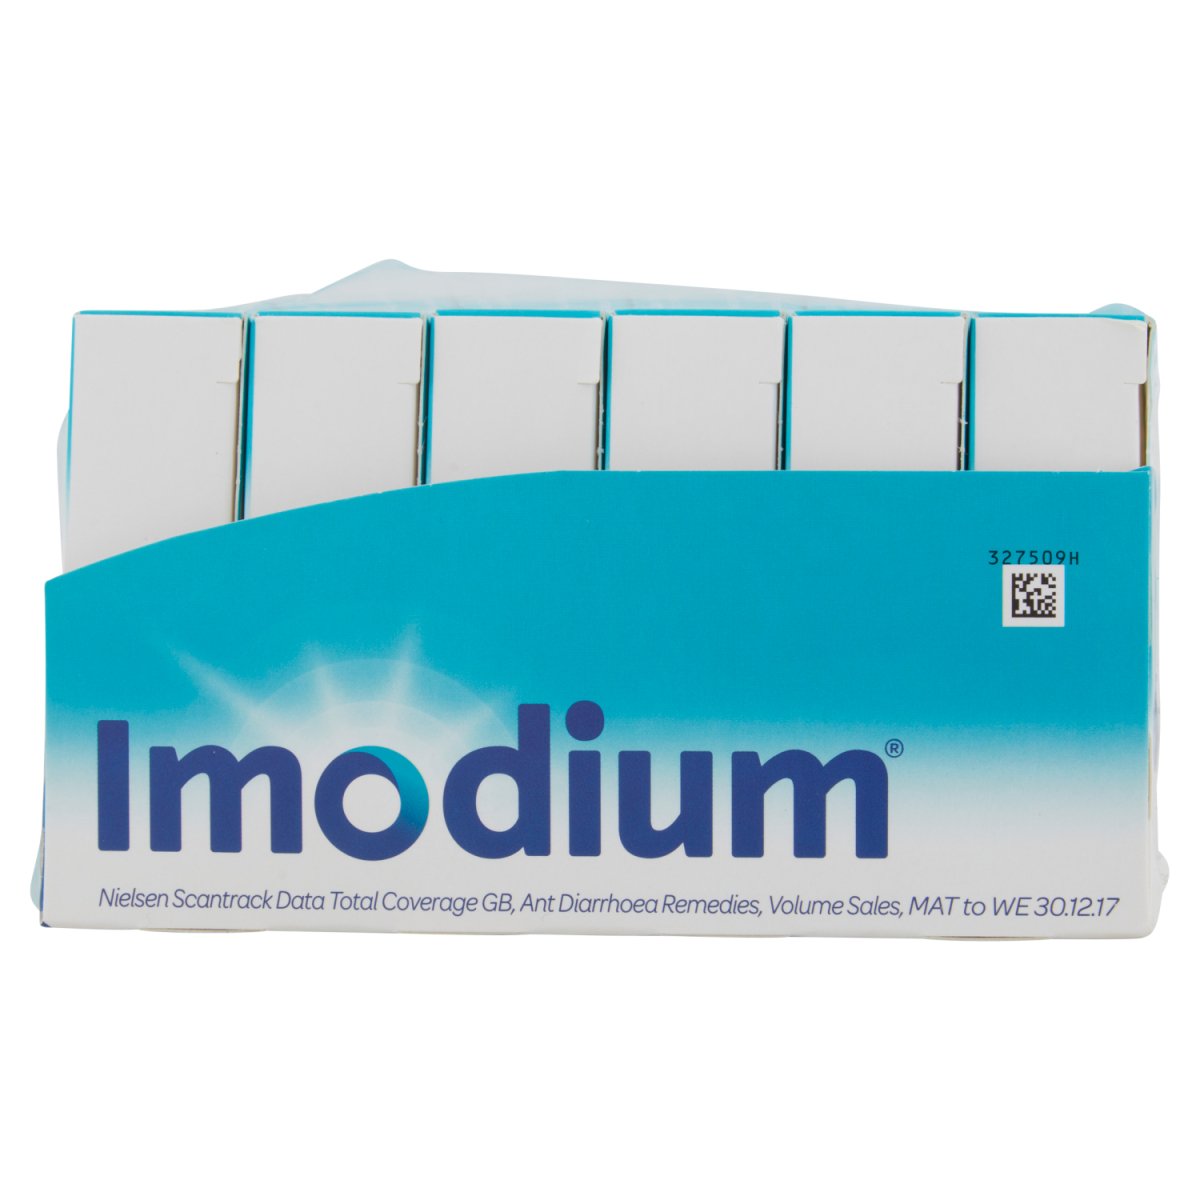 Imodium Capsules (med) - Intamarque - Wholesale 5027097901176